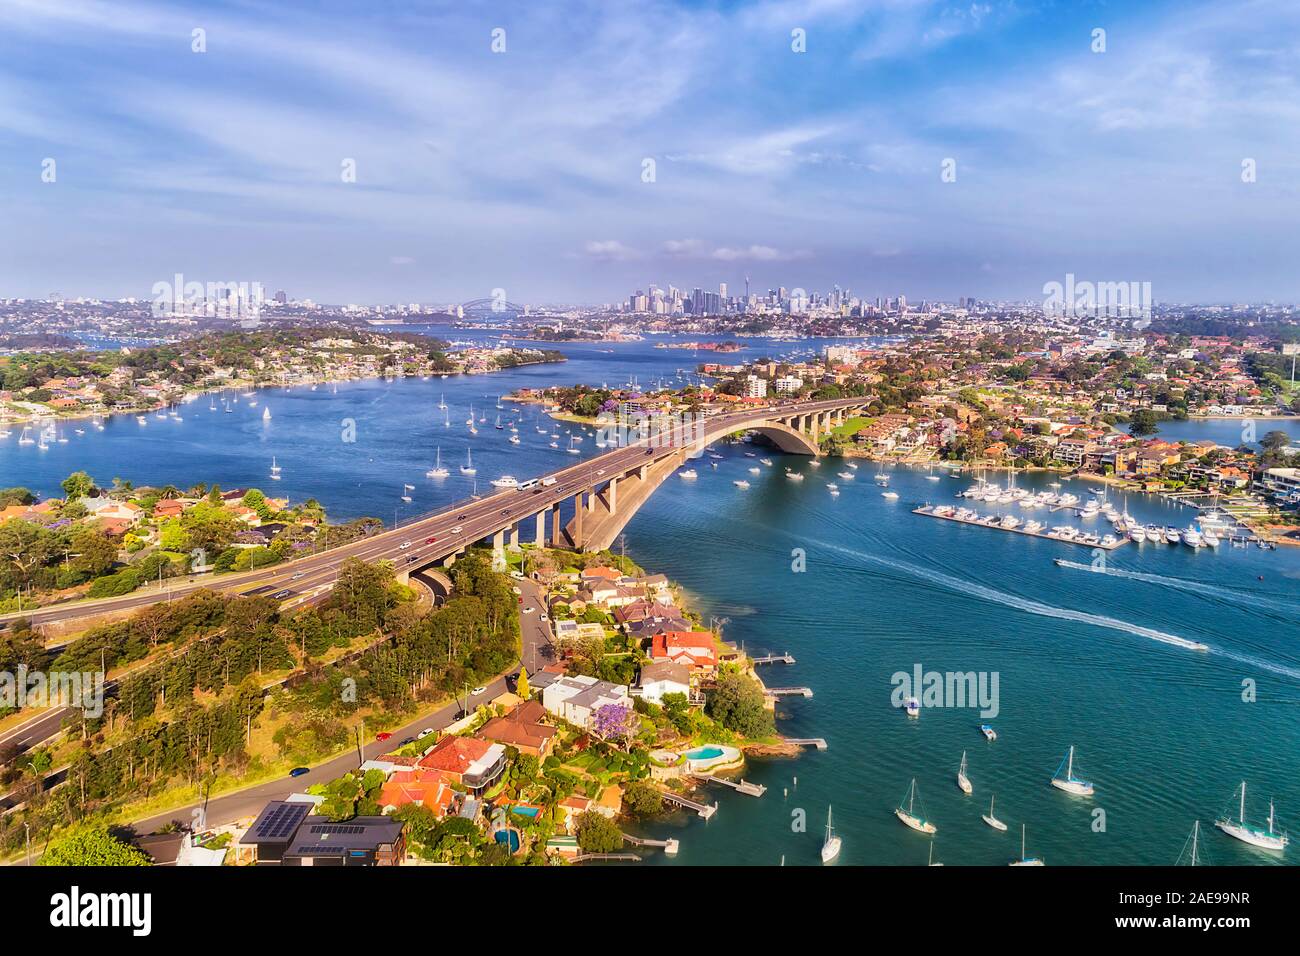 Mayor a lo largo de Sydney Parramatta river desde Gladesville suburban puente hacia la ciudad de Sydney CBD skyline en niveles elevados de vista aérea. Foto de stock